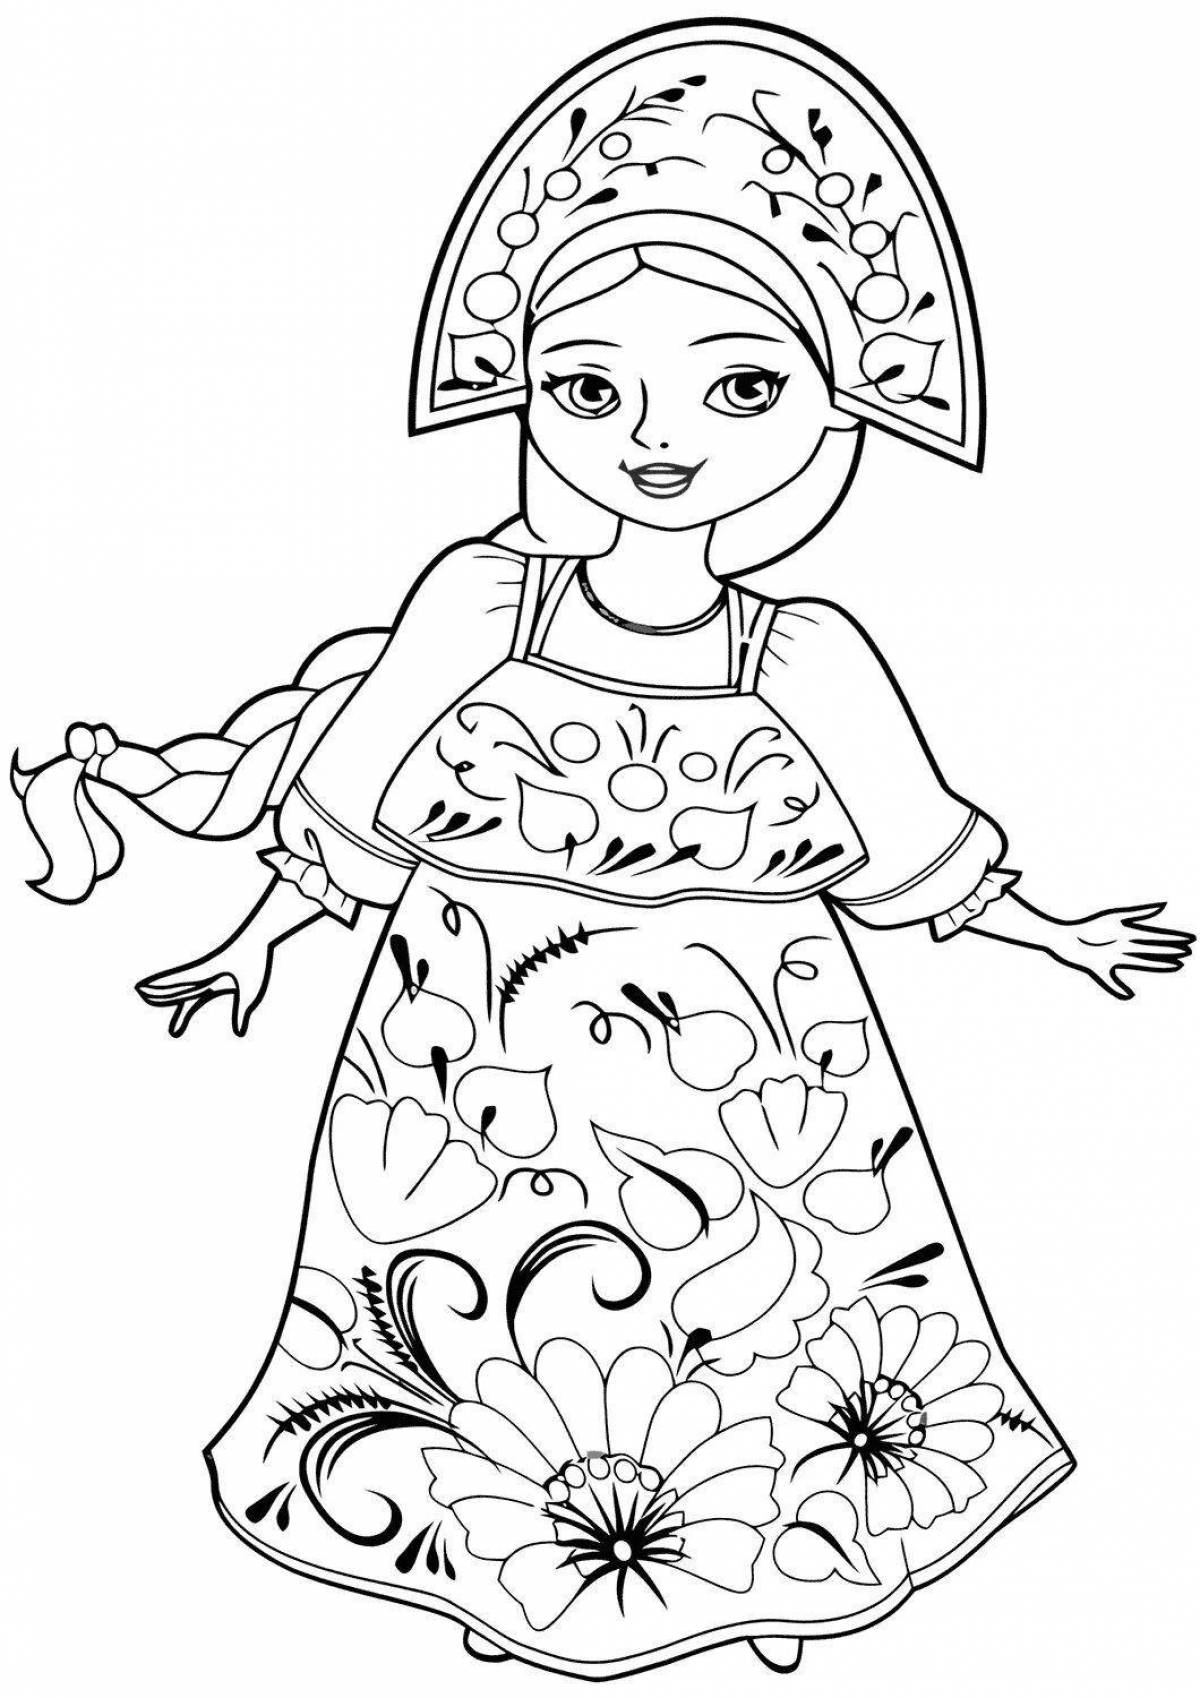 Exotic coloring girl in kokoshnik